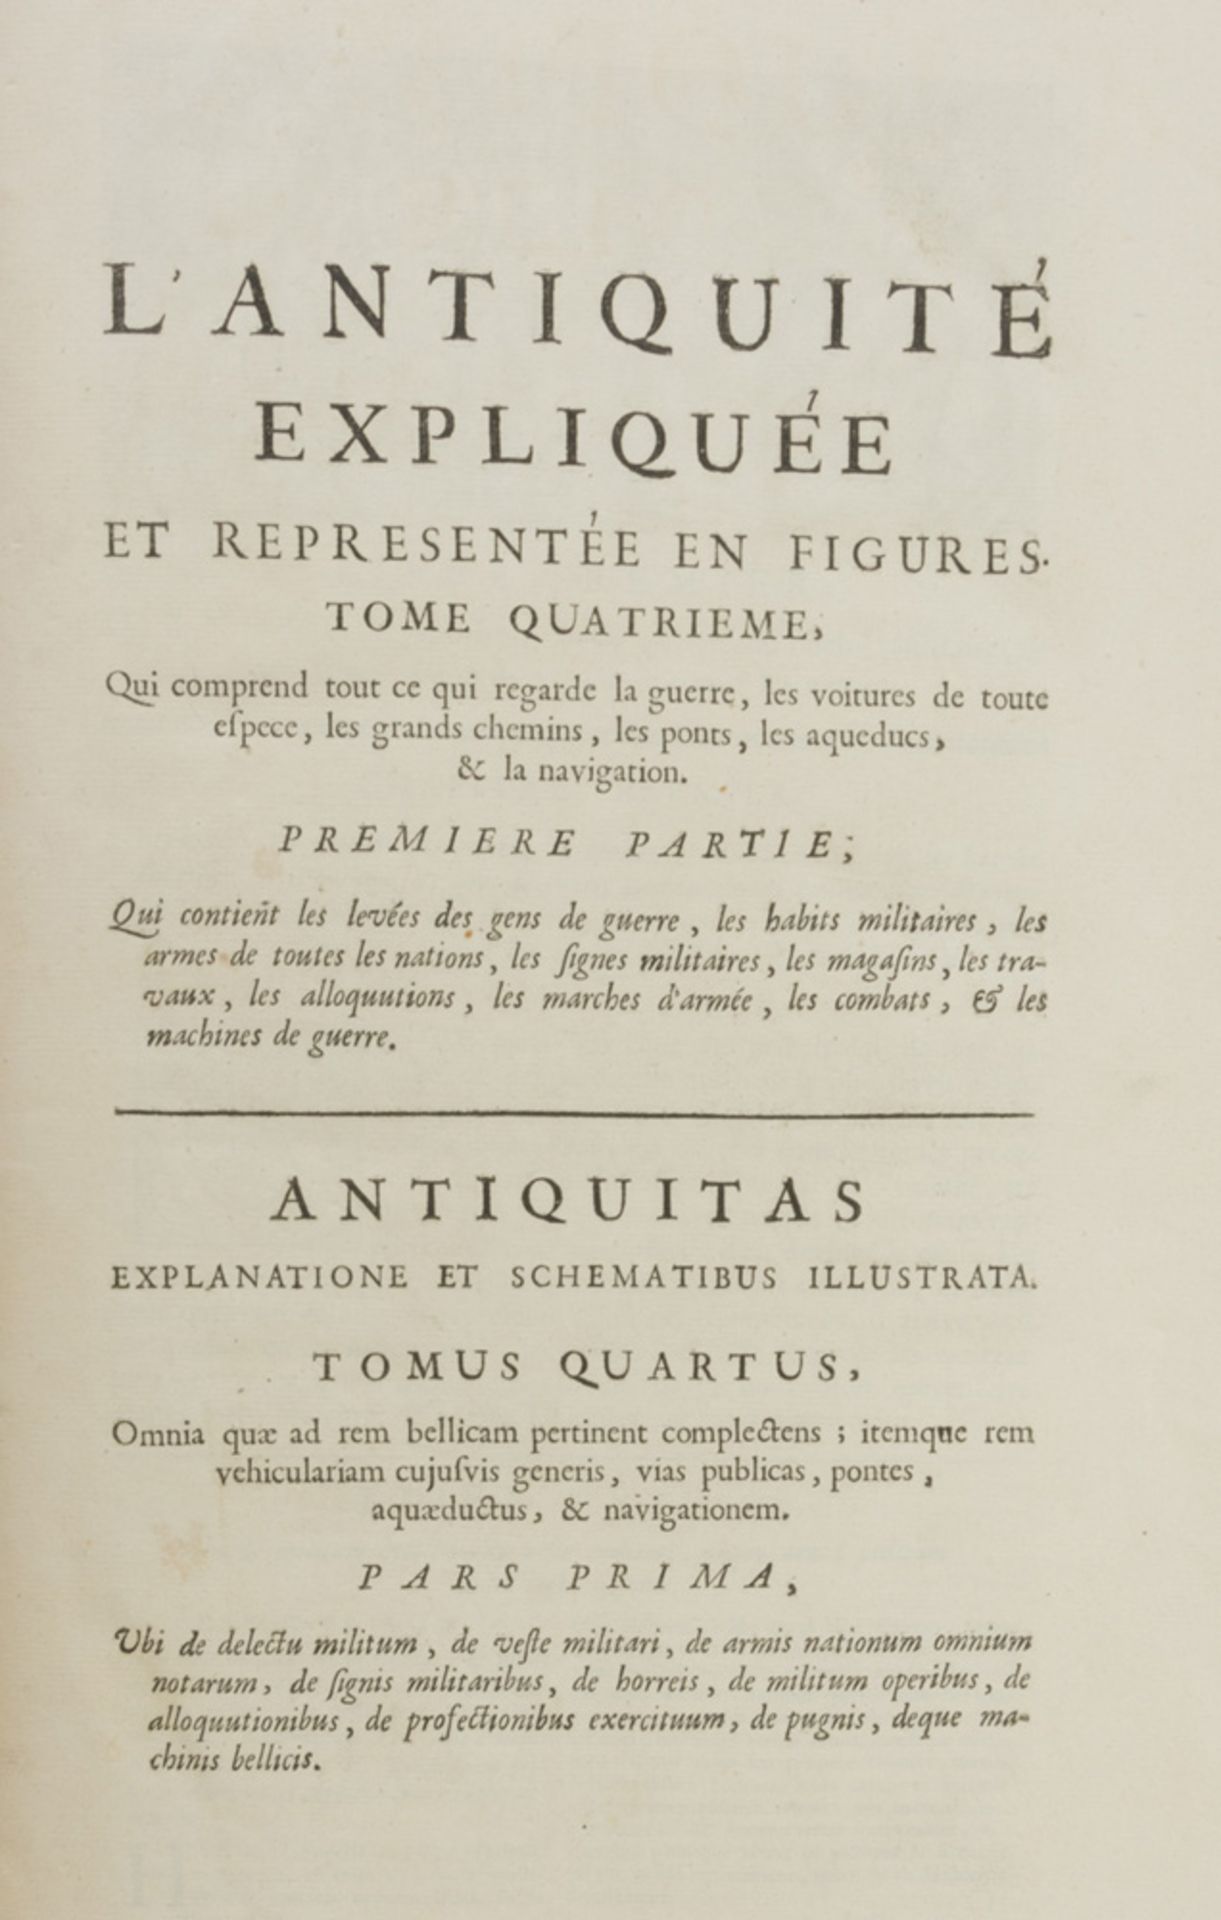 ROMAN ANTIQUITY Bernard de Mont Faucon, The Antiquité expliquée. Two volumes in folio with - Image 2 of 2